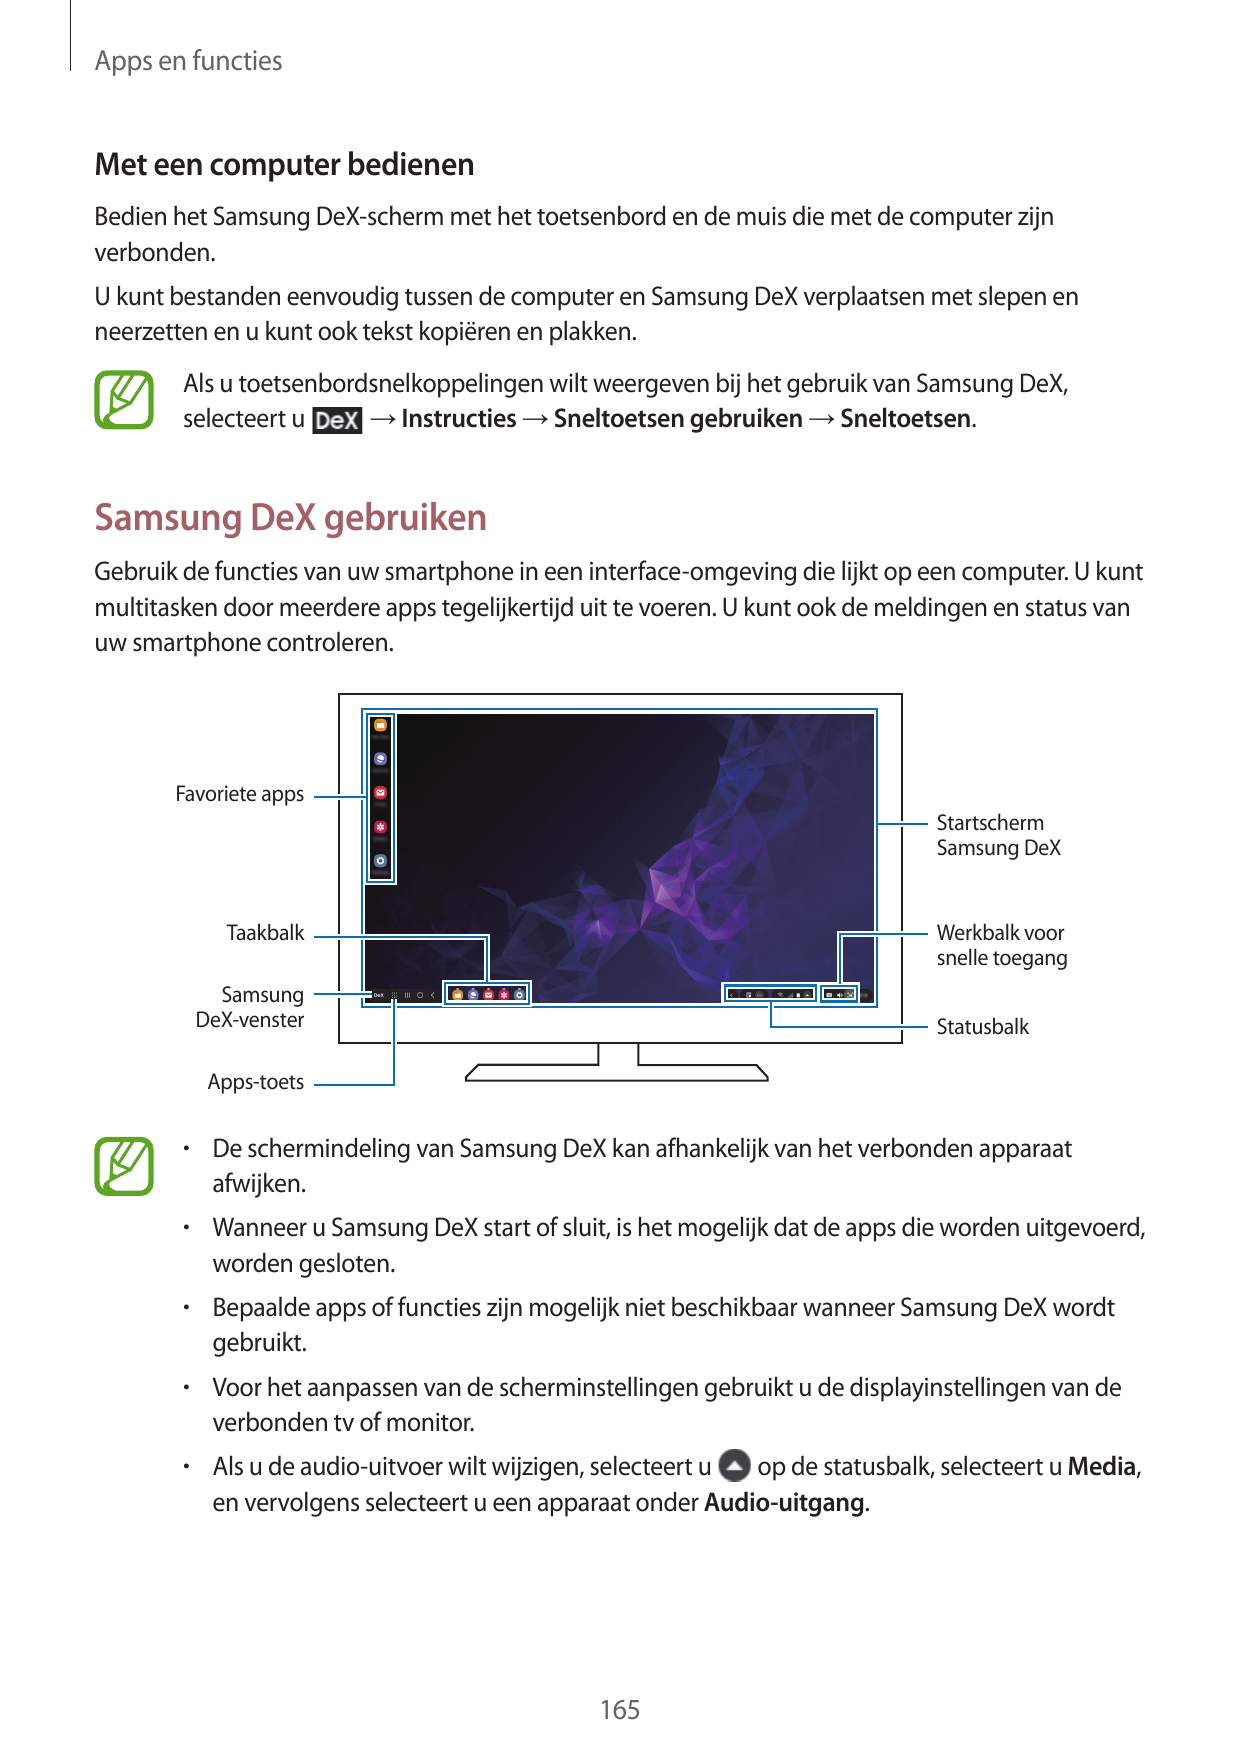 Apps en functiesMet een computer bedienenBedien het Samsung DeX-scherm met het toetsenbord en de muis die met de computer zijnve